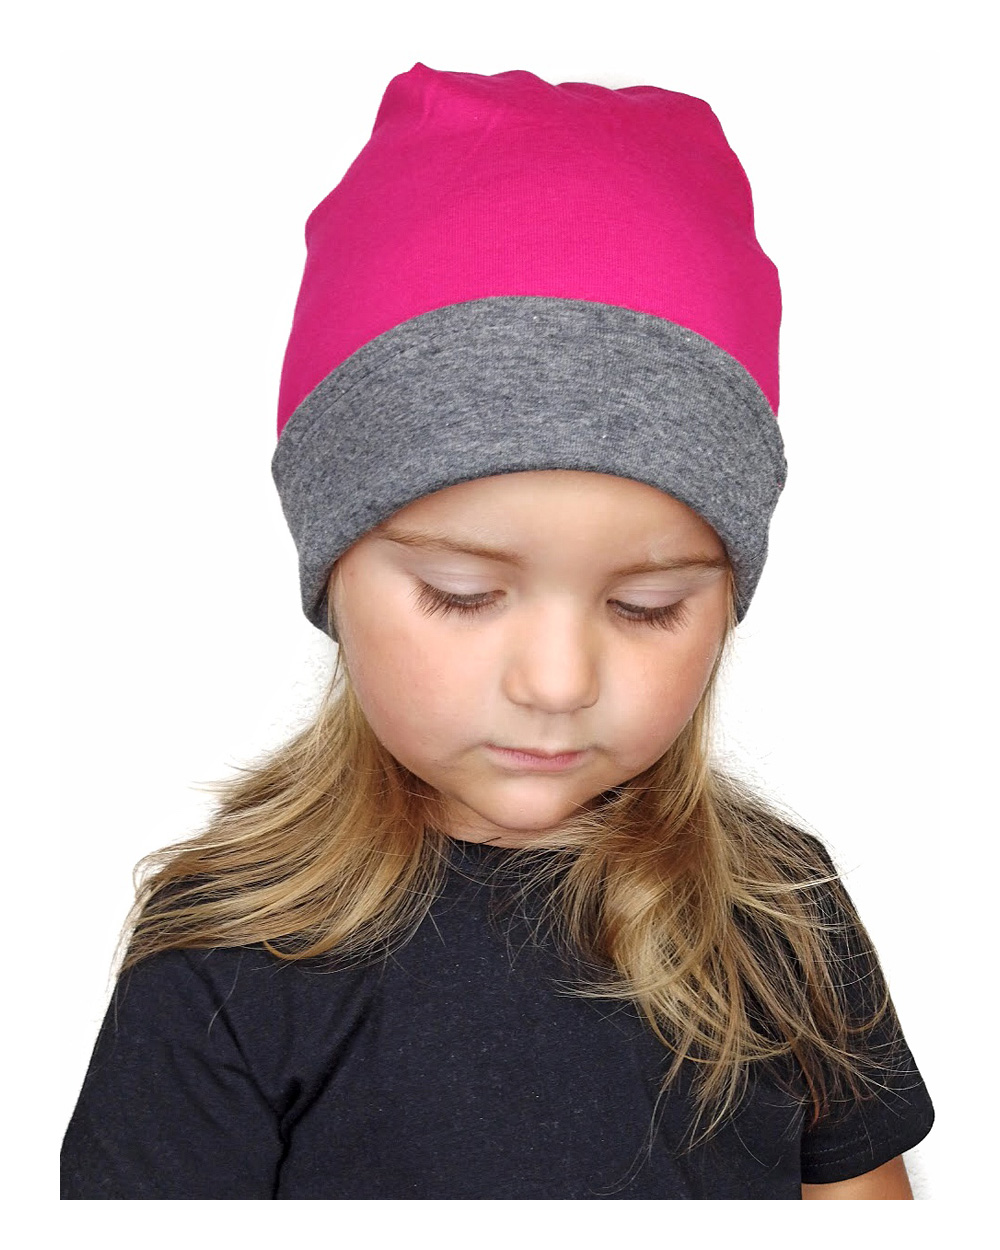 Detská čiapka bavlnená, obojstranná, tmavo sivý melír + sýto ružová